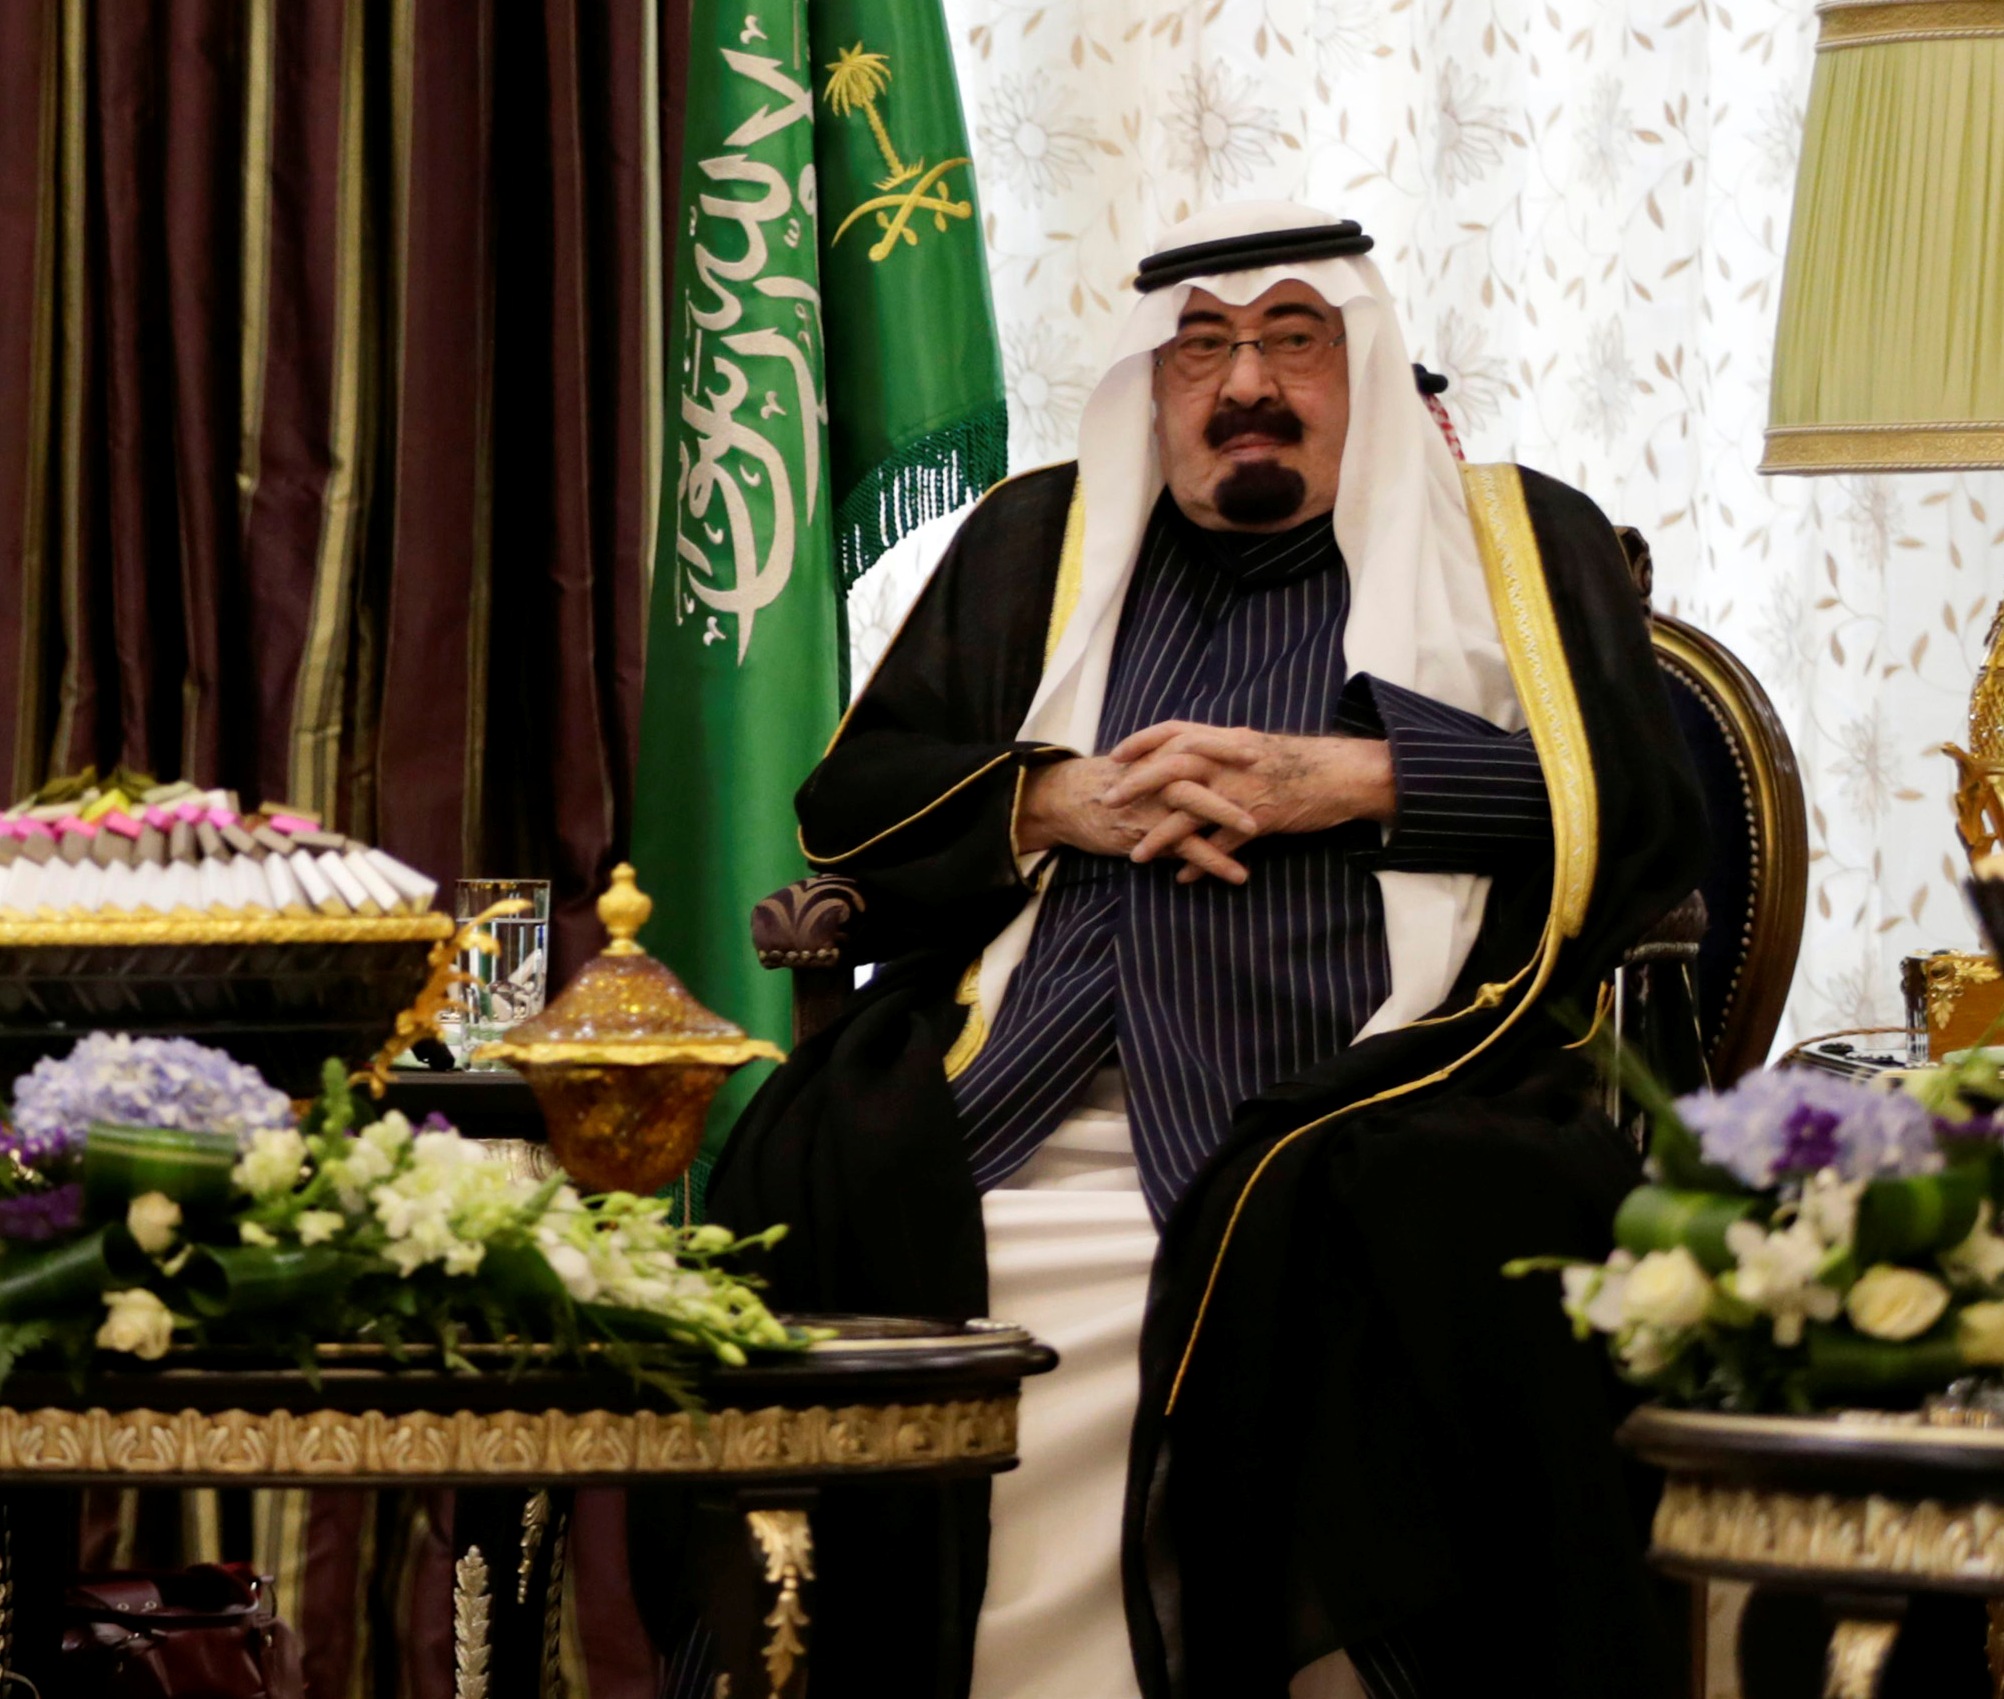 السعودية تستضيف محادثات مع أمريكا ومصر وحلفاء إقليميين آخرين يوم الخميس